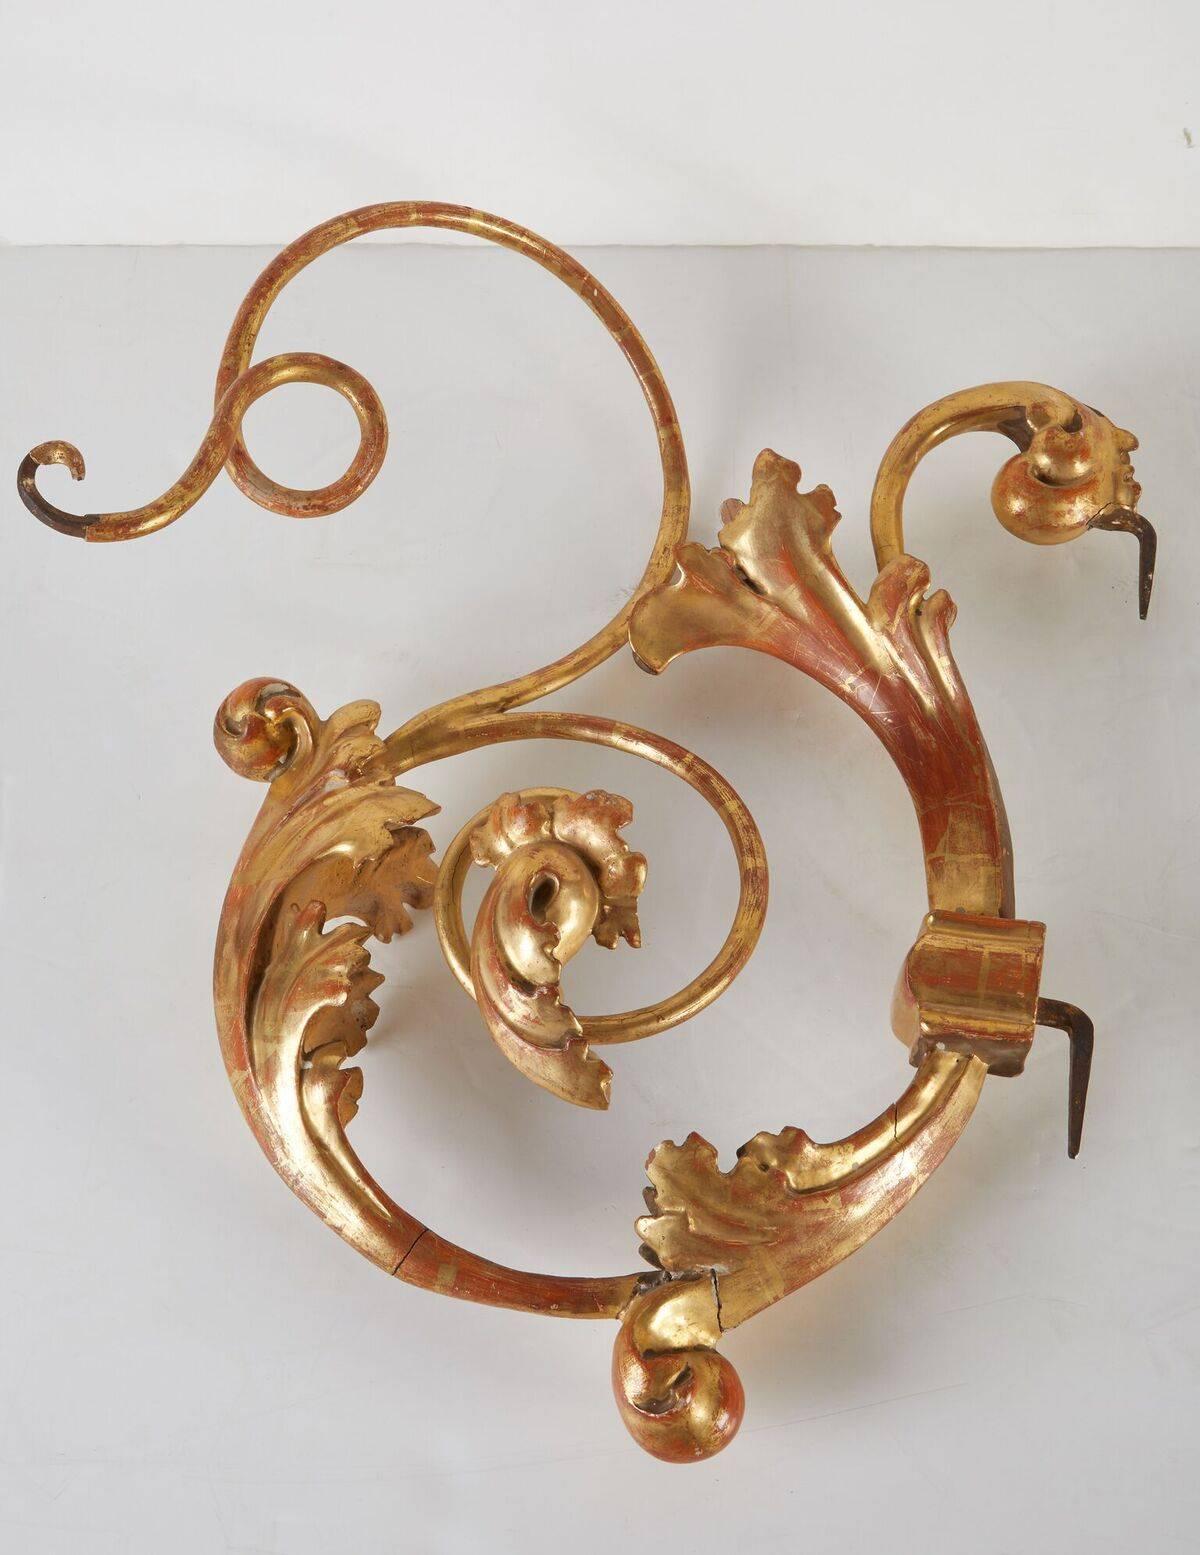 Paire de consoles à volutes en métal et en bois, très recherchées, de fabrication italienne, datant d'environ 1785. Tous deux gessoïsés, et dorés à l'or fin 22 carats. La paire est ornée de sculptures de feuilles d'acanthe et se termine par des